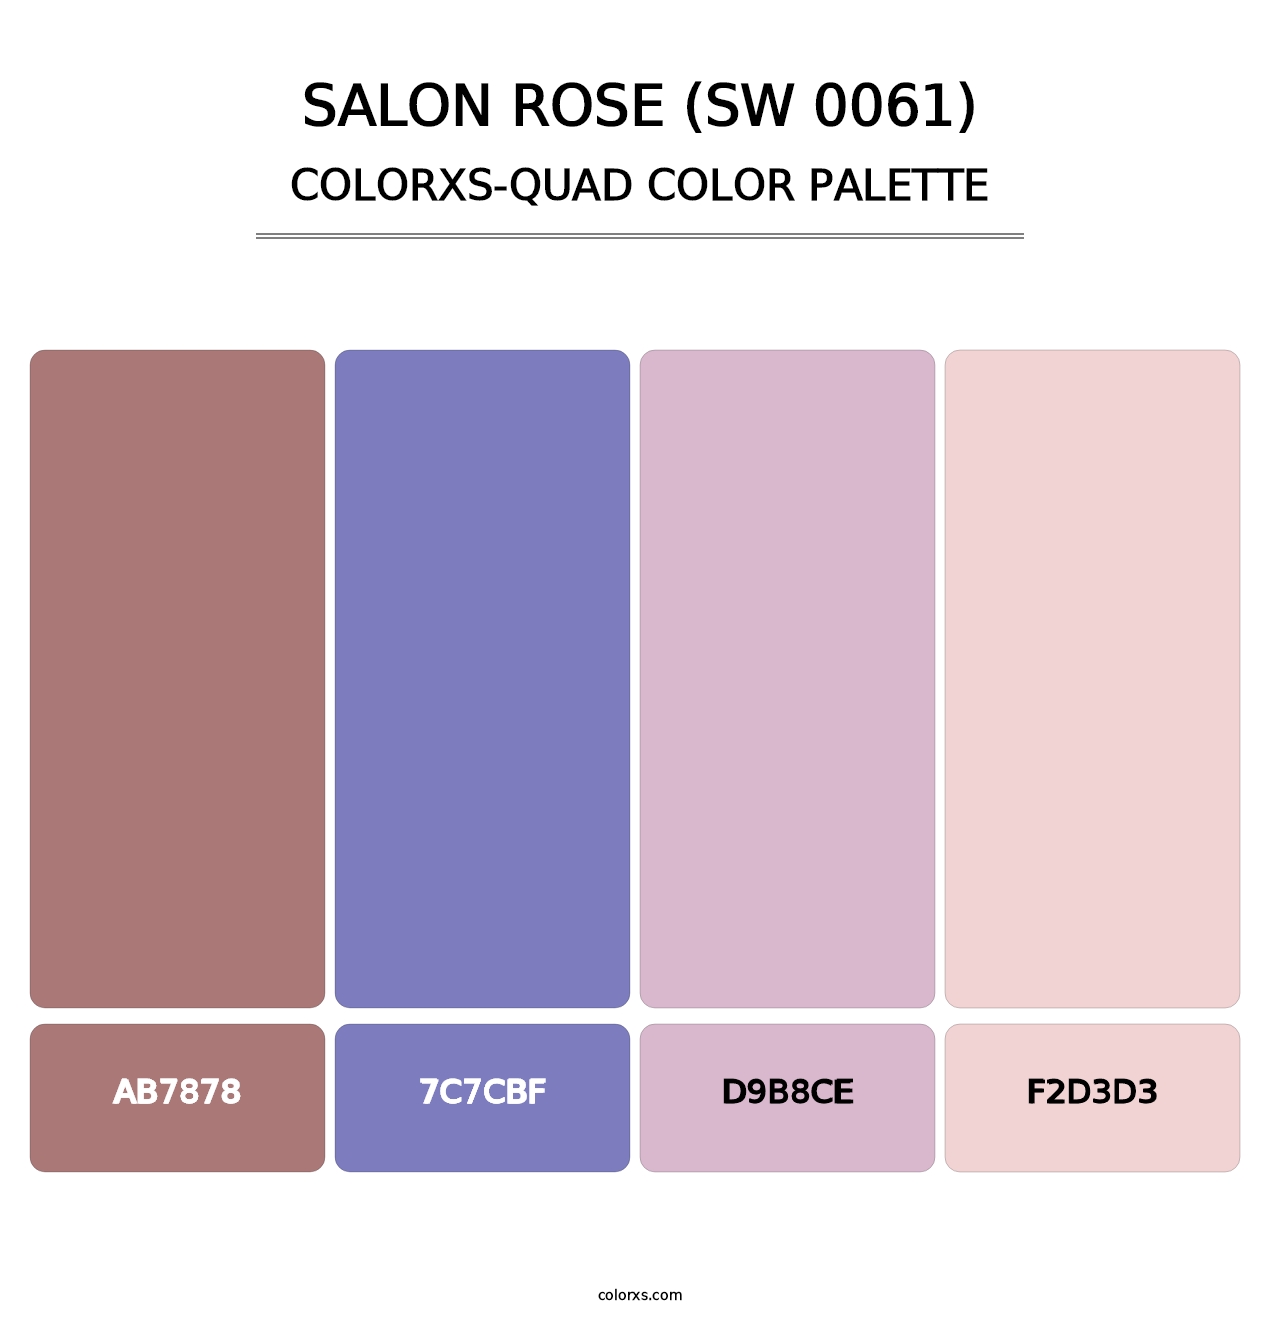 Salon Rose (SW 0061) - Colorxs Quad Palette